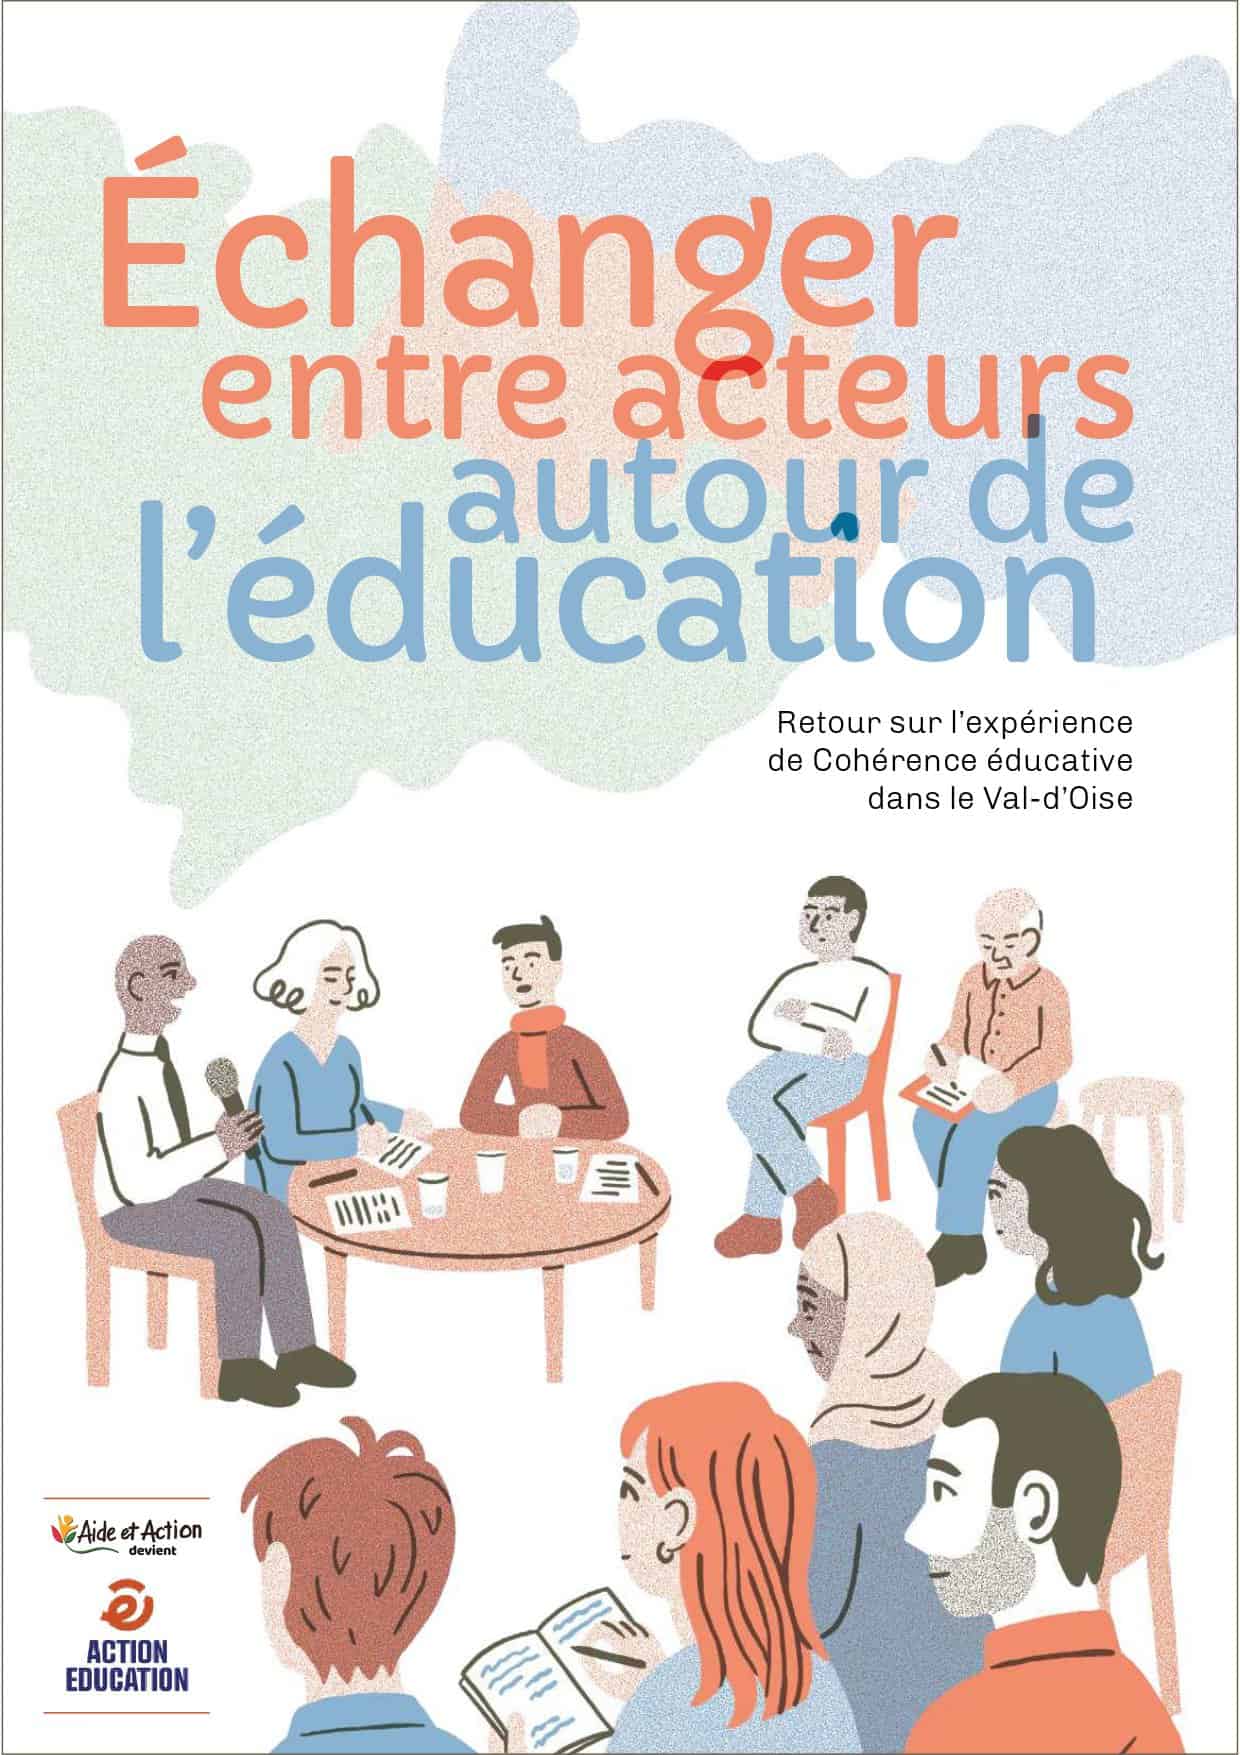 Couverture du nouveau livret de la cohérence éducative sur ses 10 ans d'expériences dans le Val d'Oise